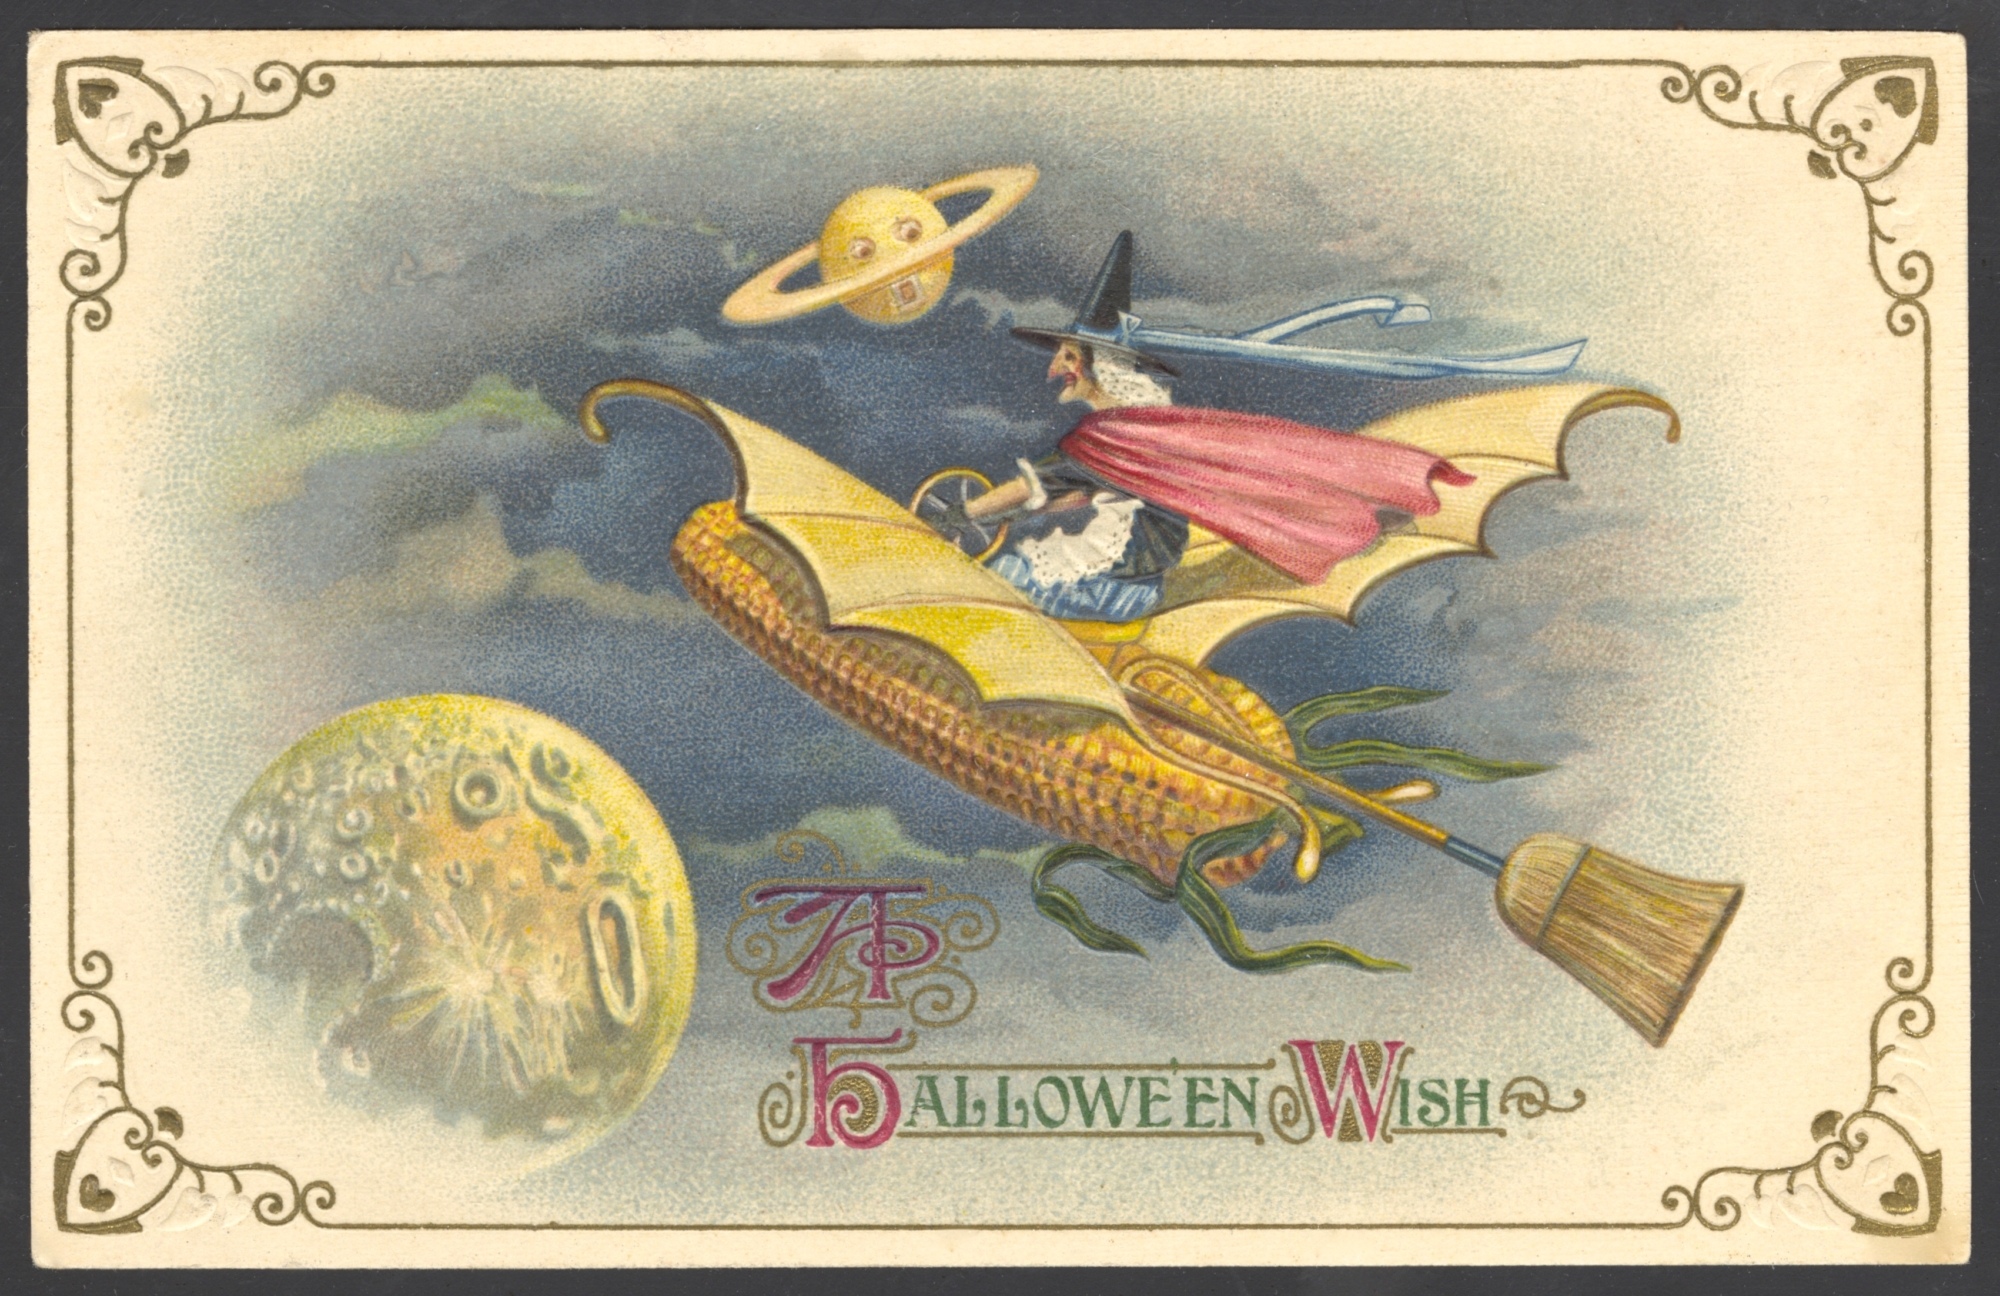 Winsch Halloween Postcard copyright 1914